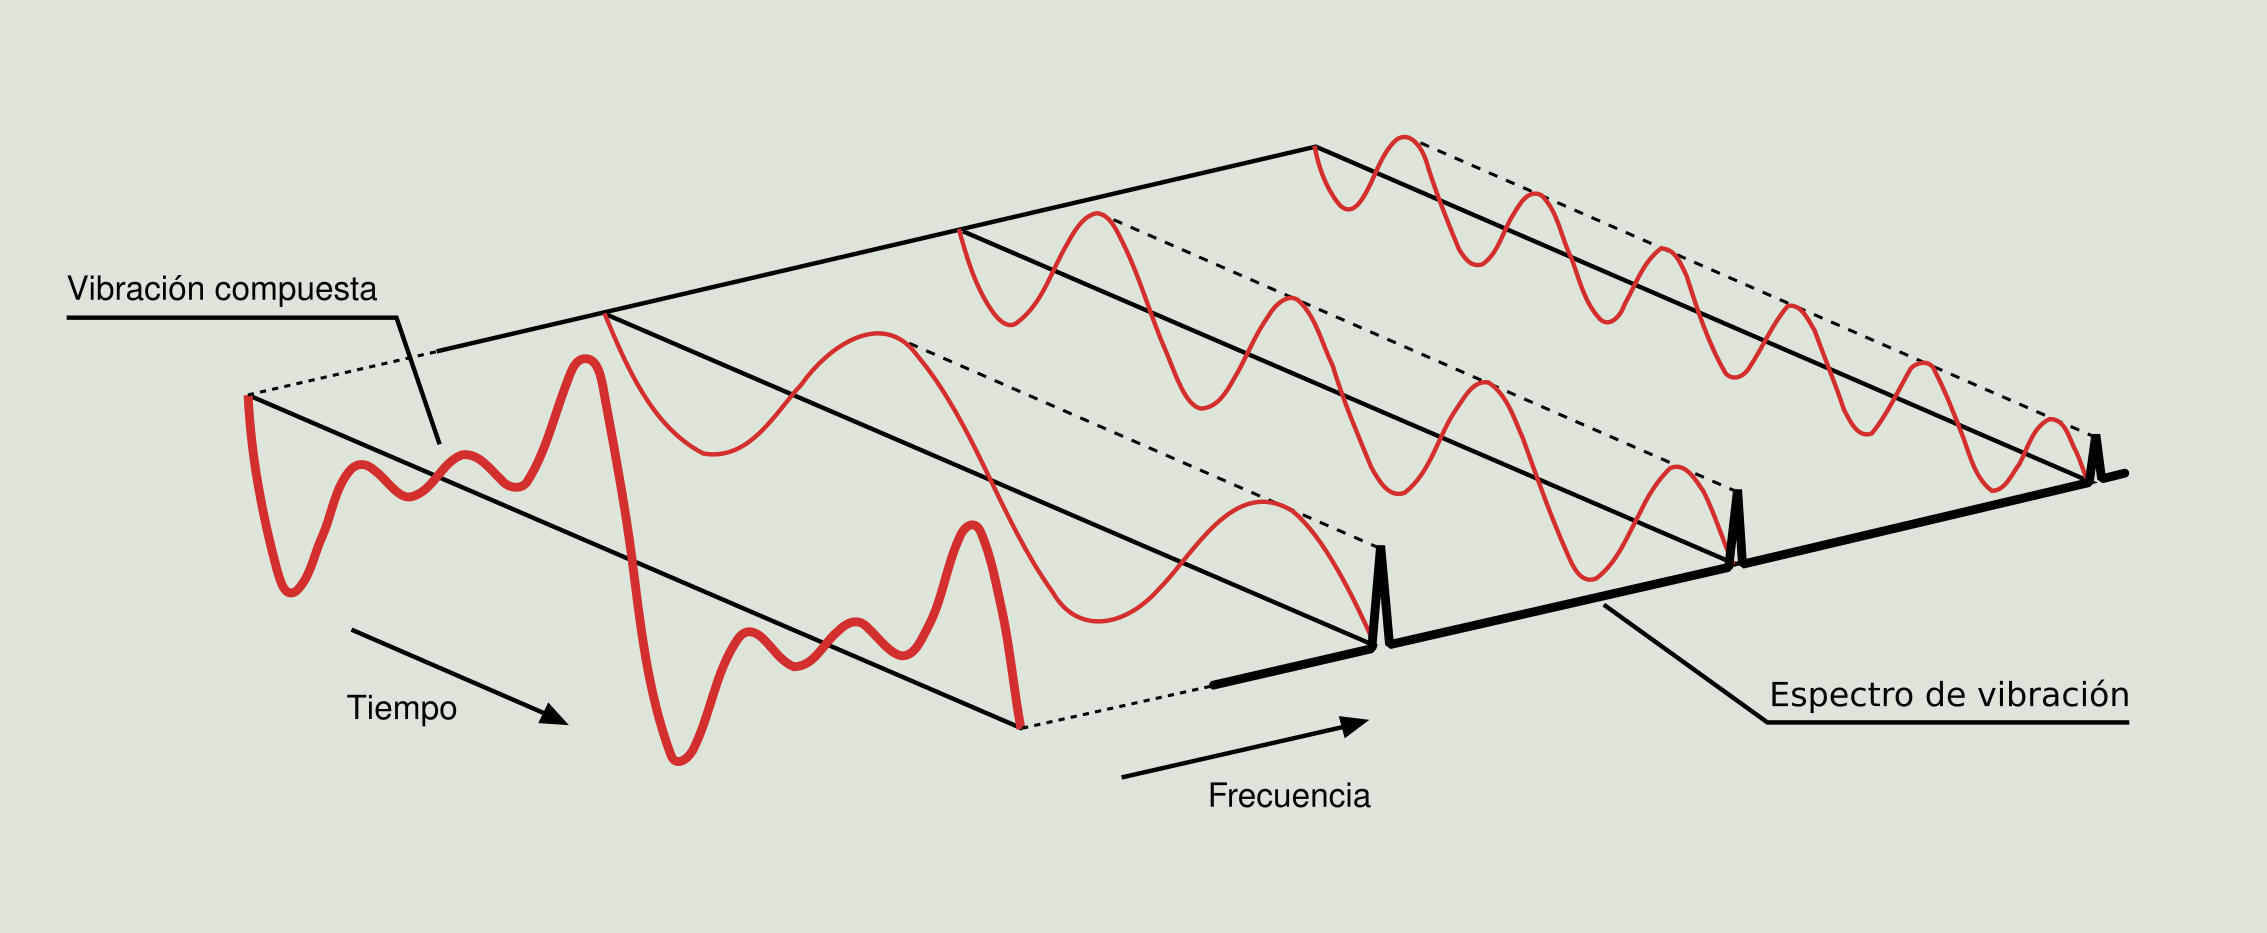 Figura 2.9: Procesado FFT de una onda vibratoria compleja